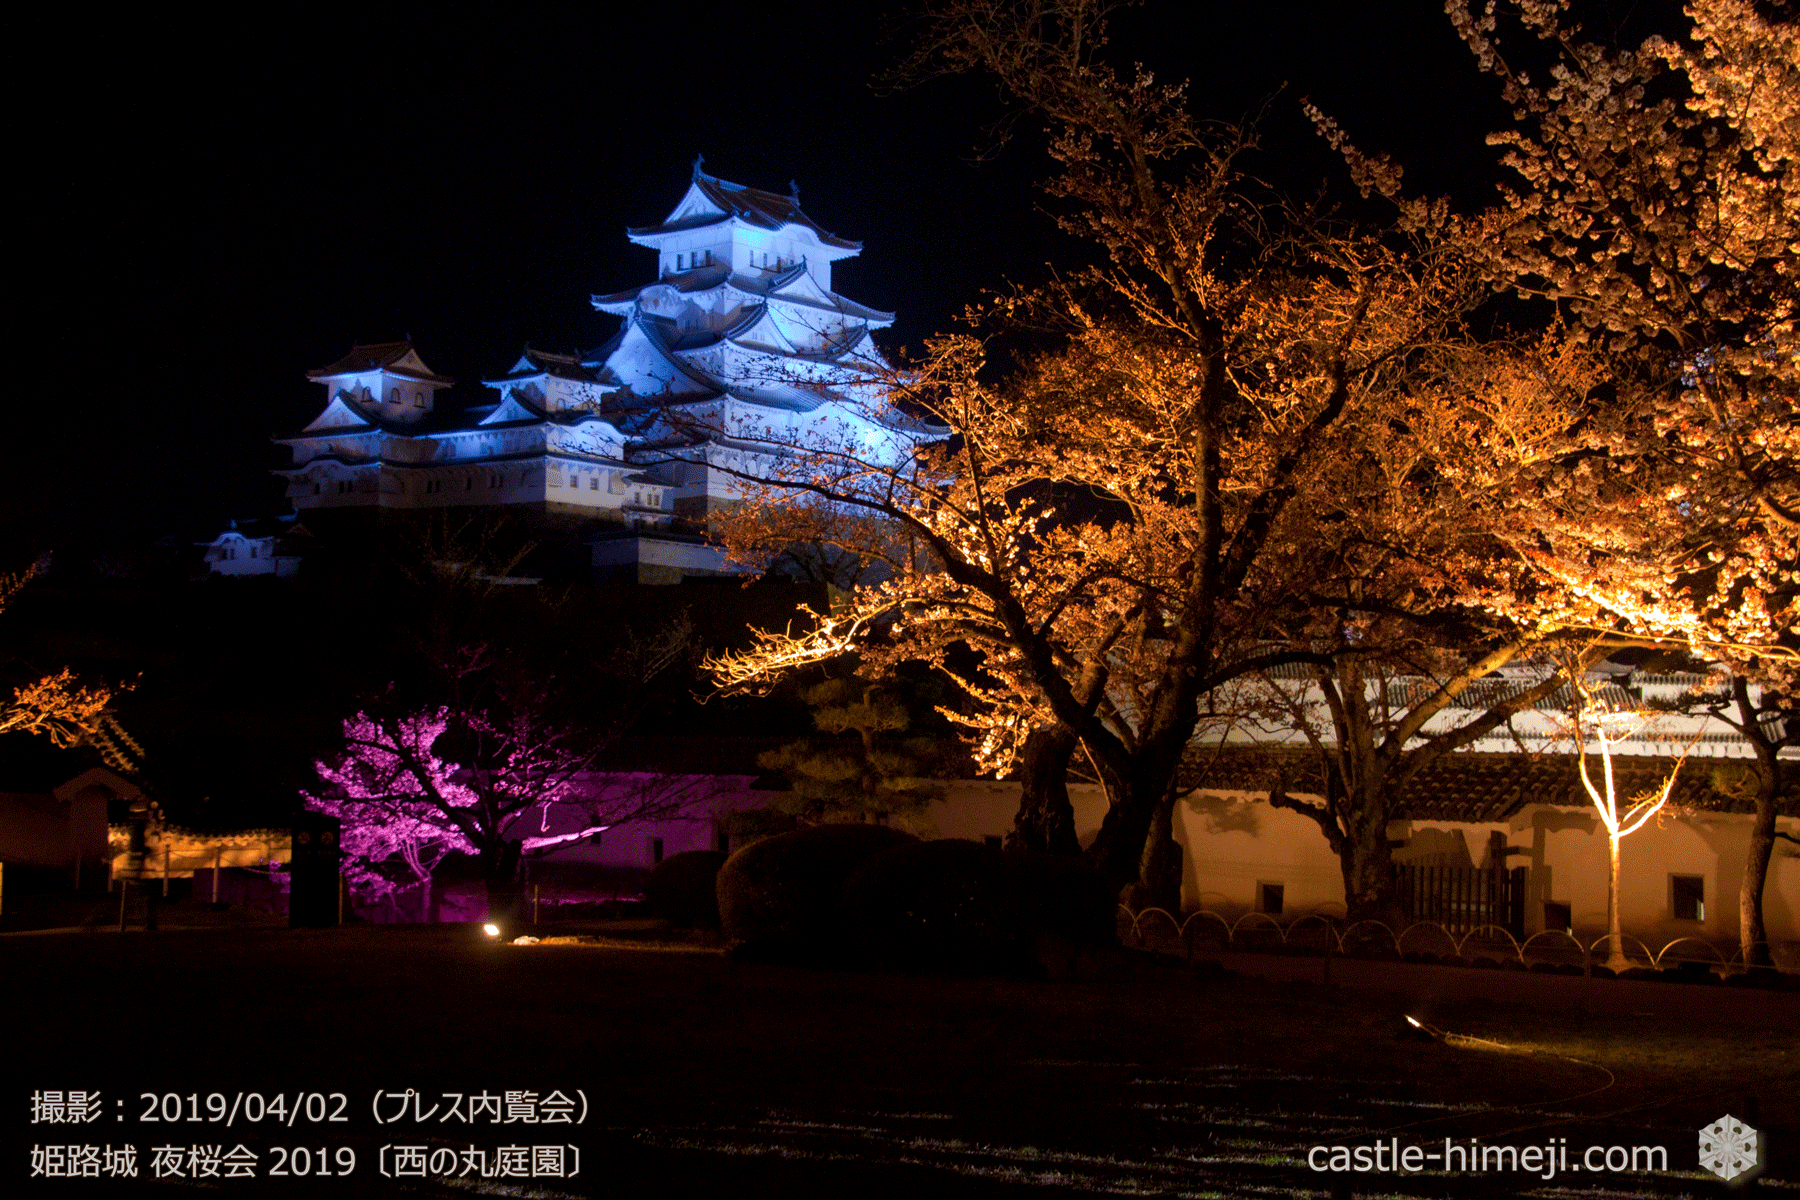 19 4 2 姫路城がブルーにライトアップ 自閉症啓発ライトアップ開催 終了 姫路城観光おすすめ 見どころ案内